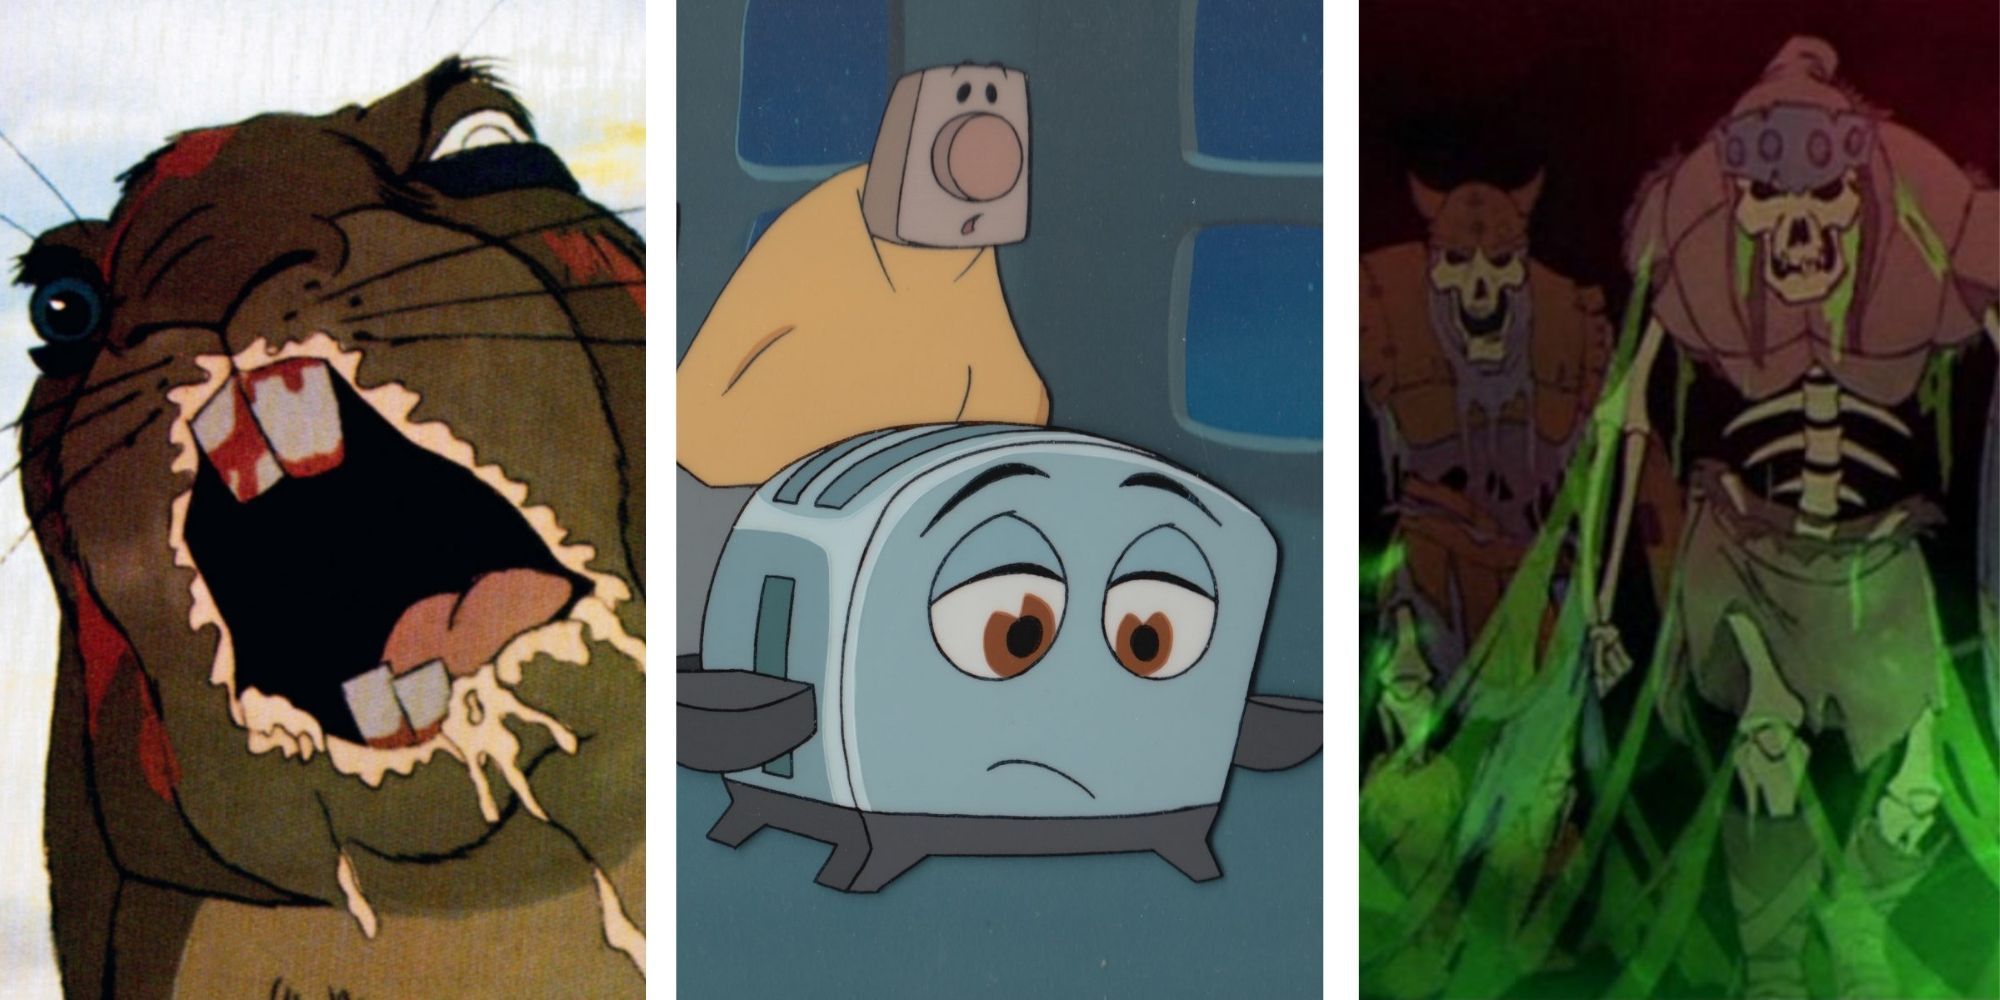 Darkest Animated Children's Movies Ever